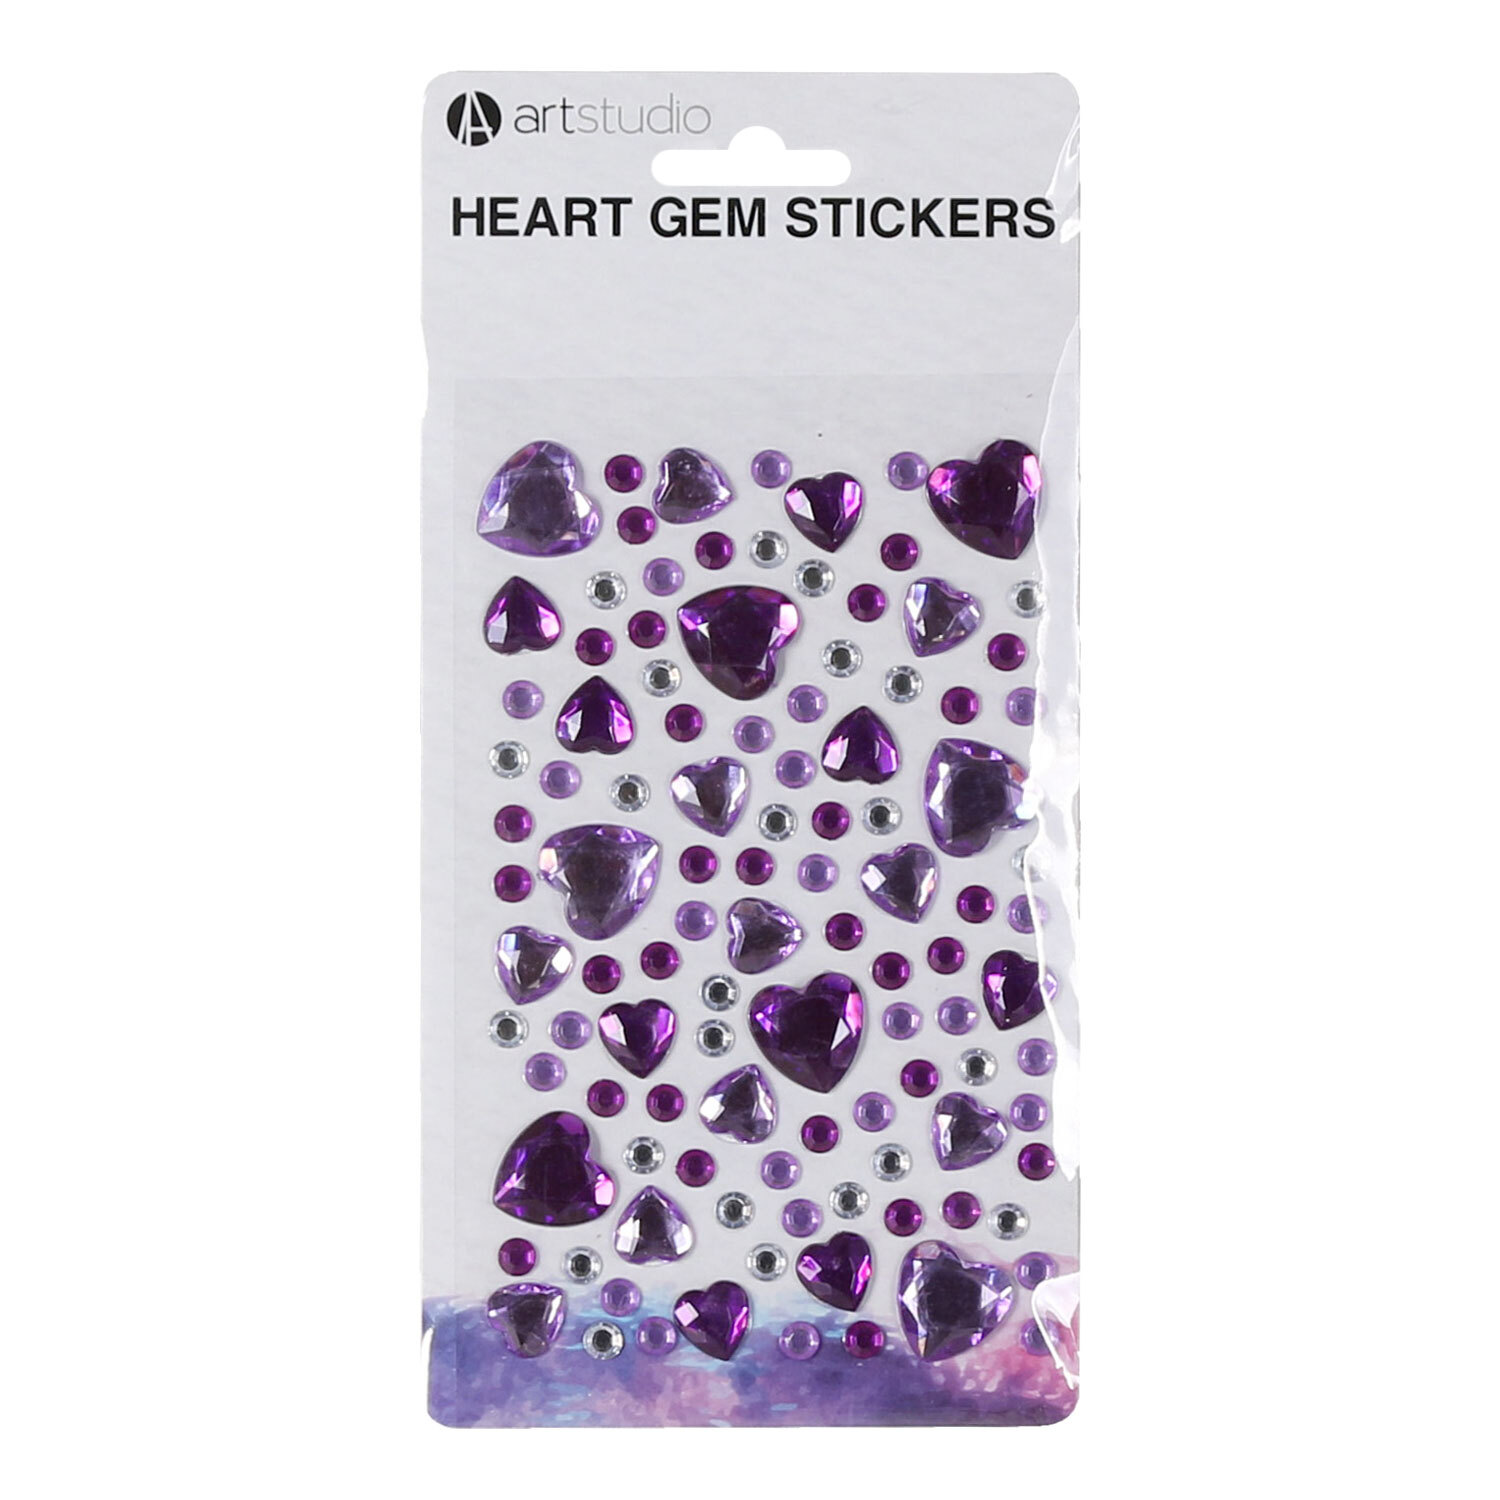 Heart Gem Stickers